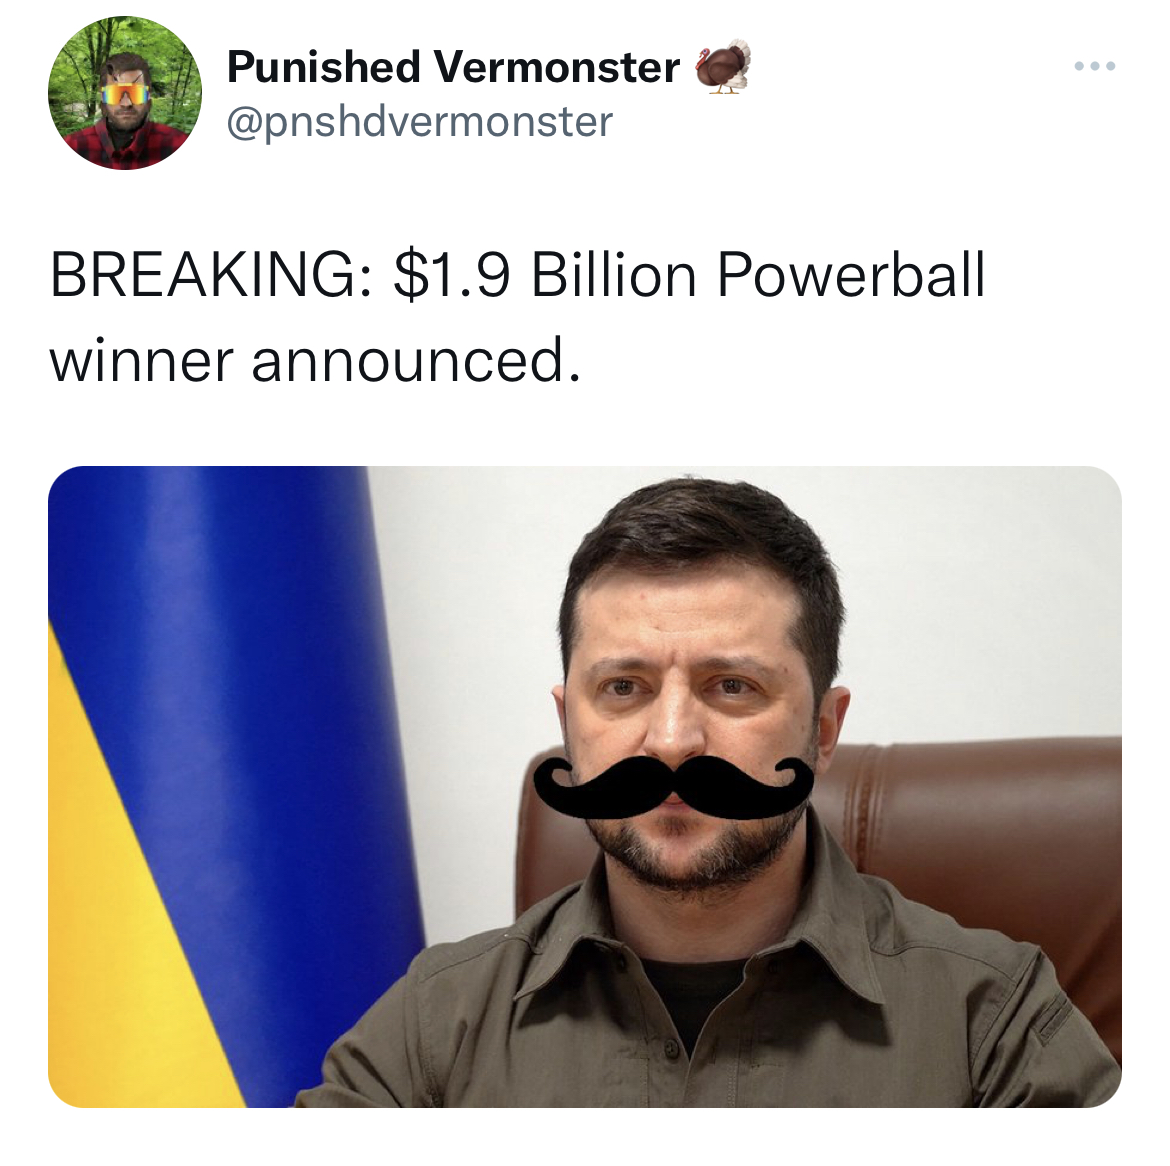 moustache - Punished Vermonster Breaking $1.9 Billion Powerball winner announced. www